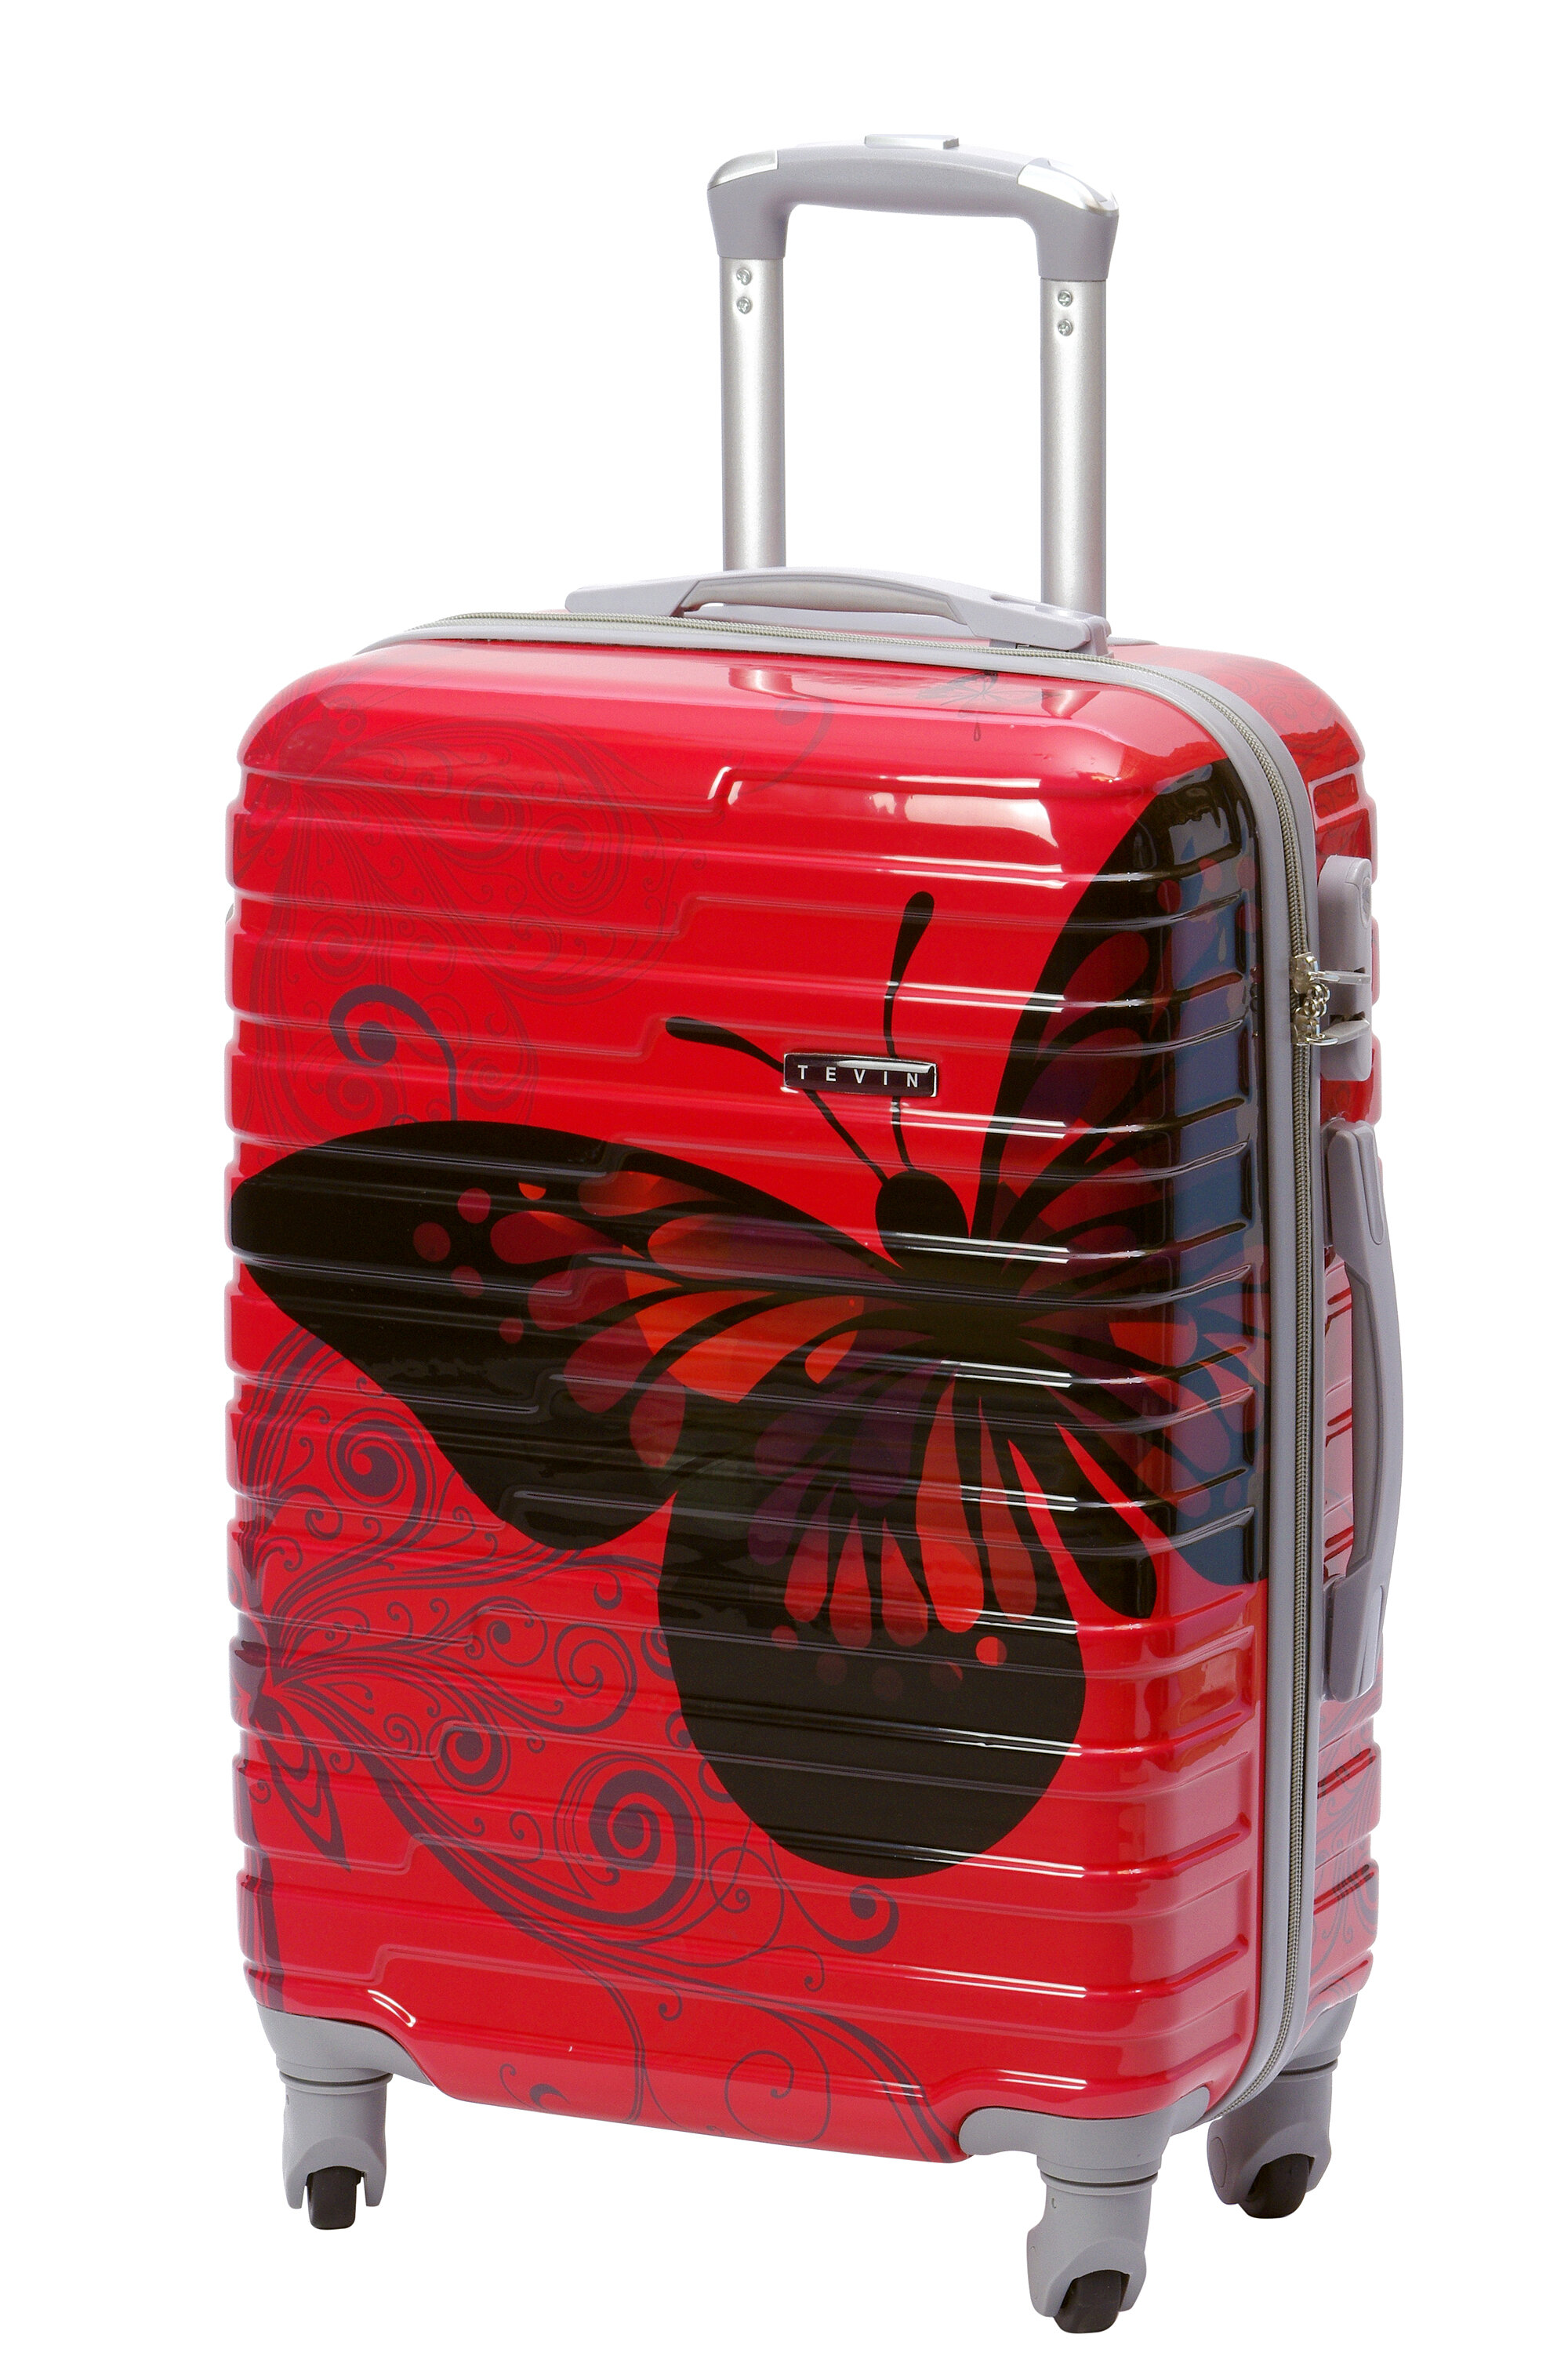 Чемодан на колесах дорожный средний багаж для путешествий женский m TEVIN размер М 64 см 62 л легкий 3.2 кг прочный поликарбонат Красный с рисунком